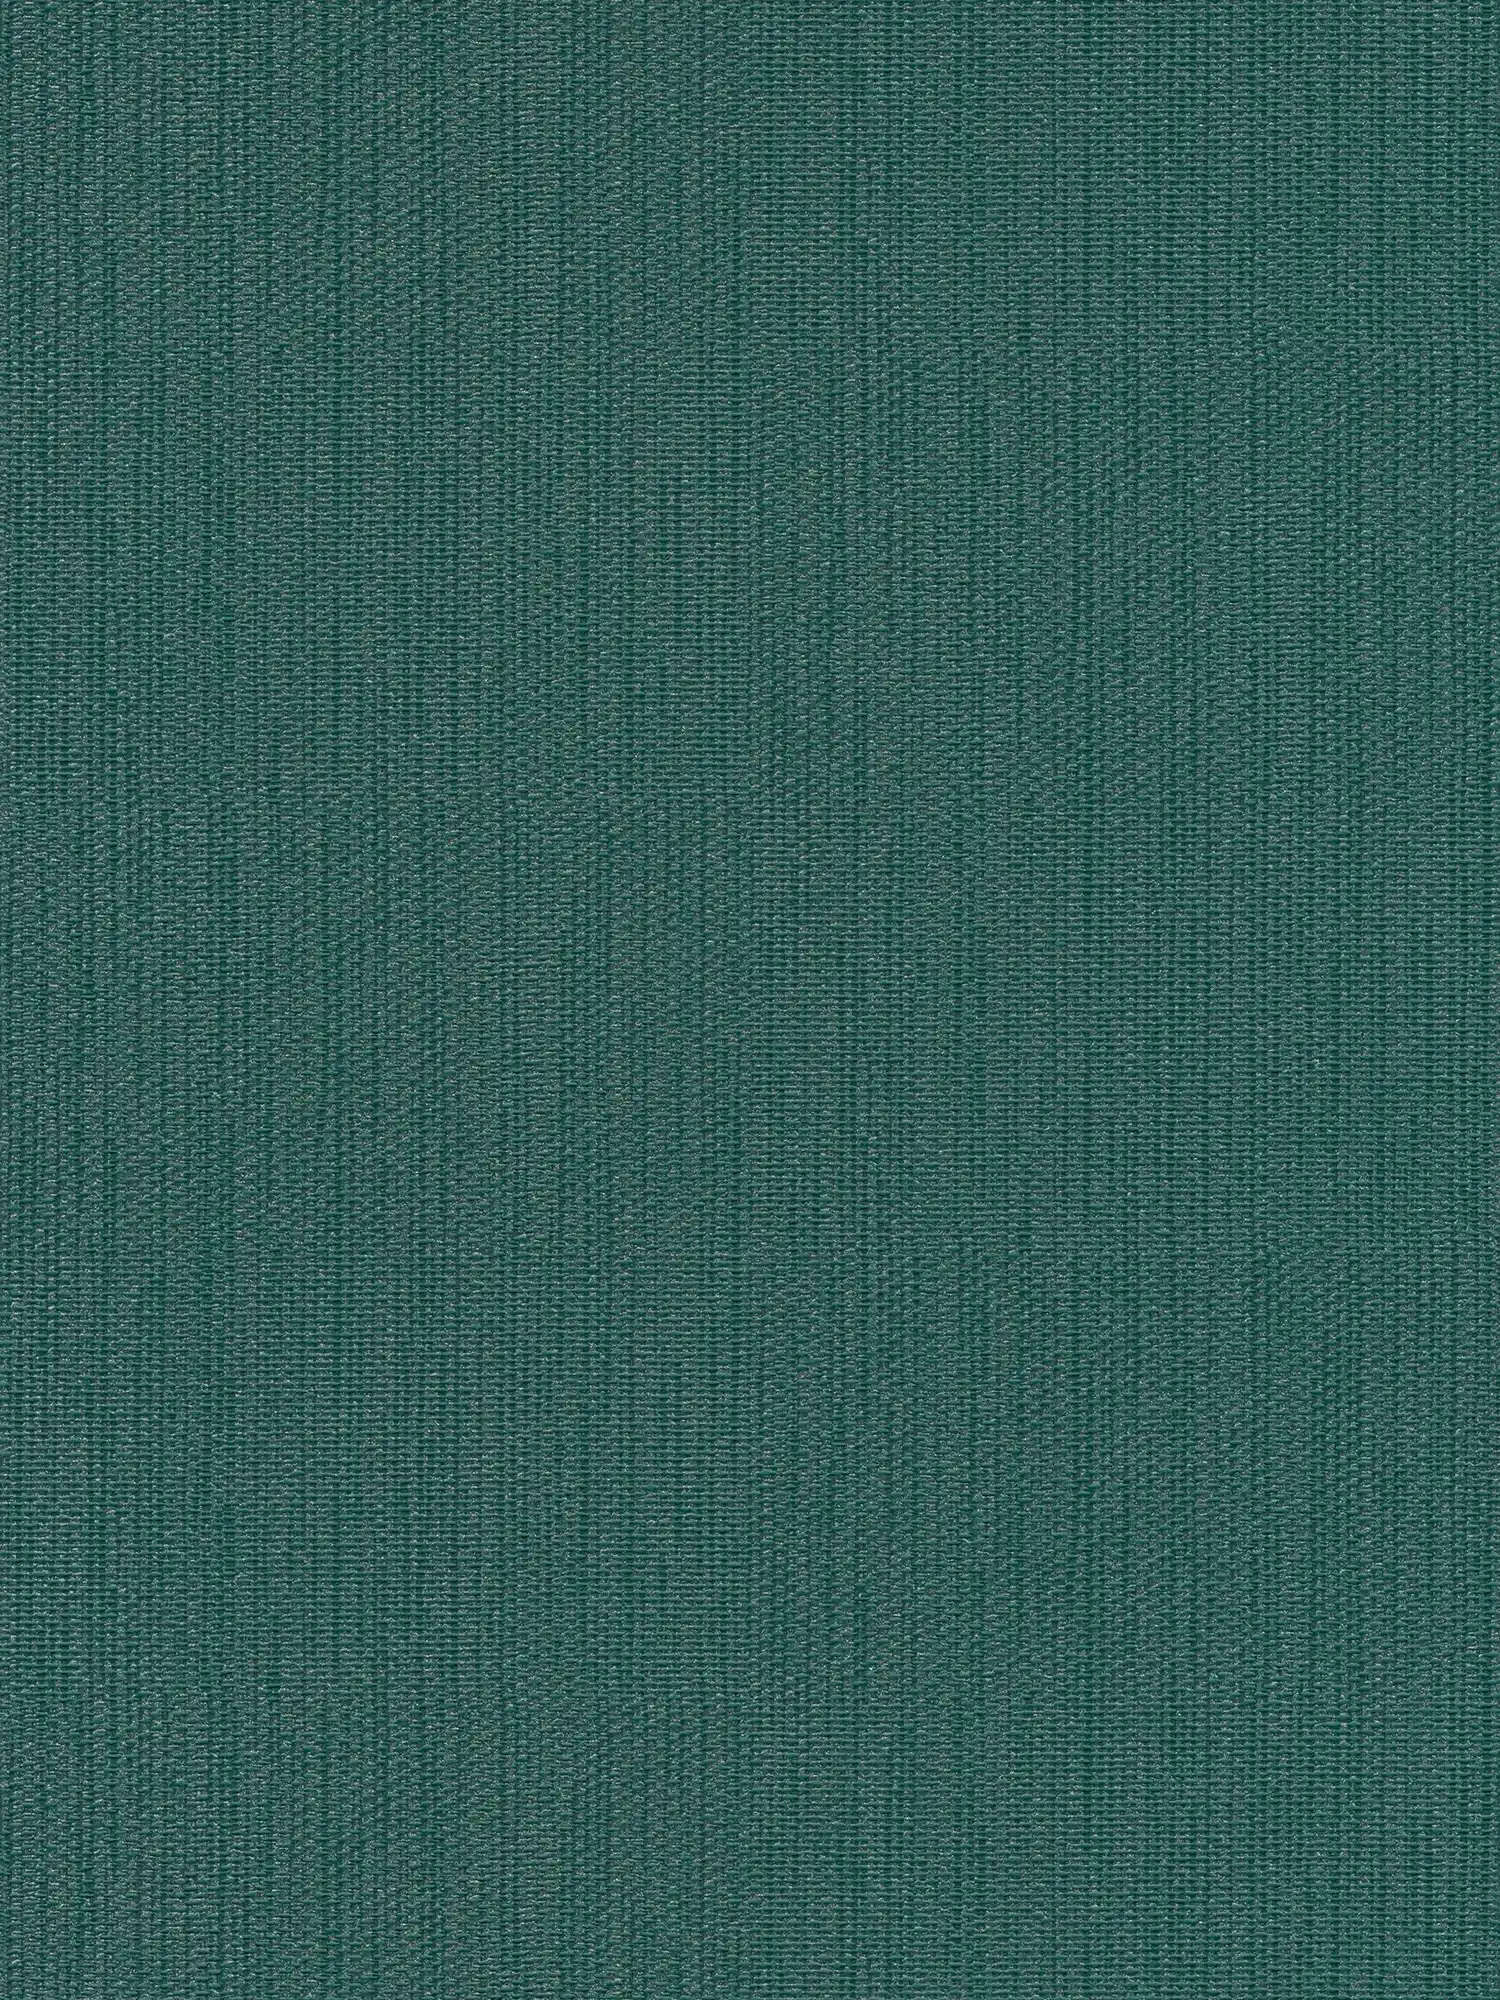 Einfarbige Vliestapete in Textiloptik – Grün, Dunkelgrün
